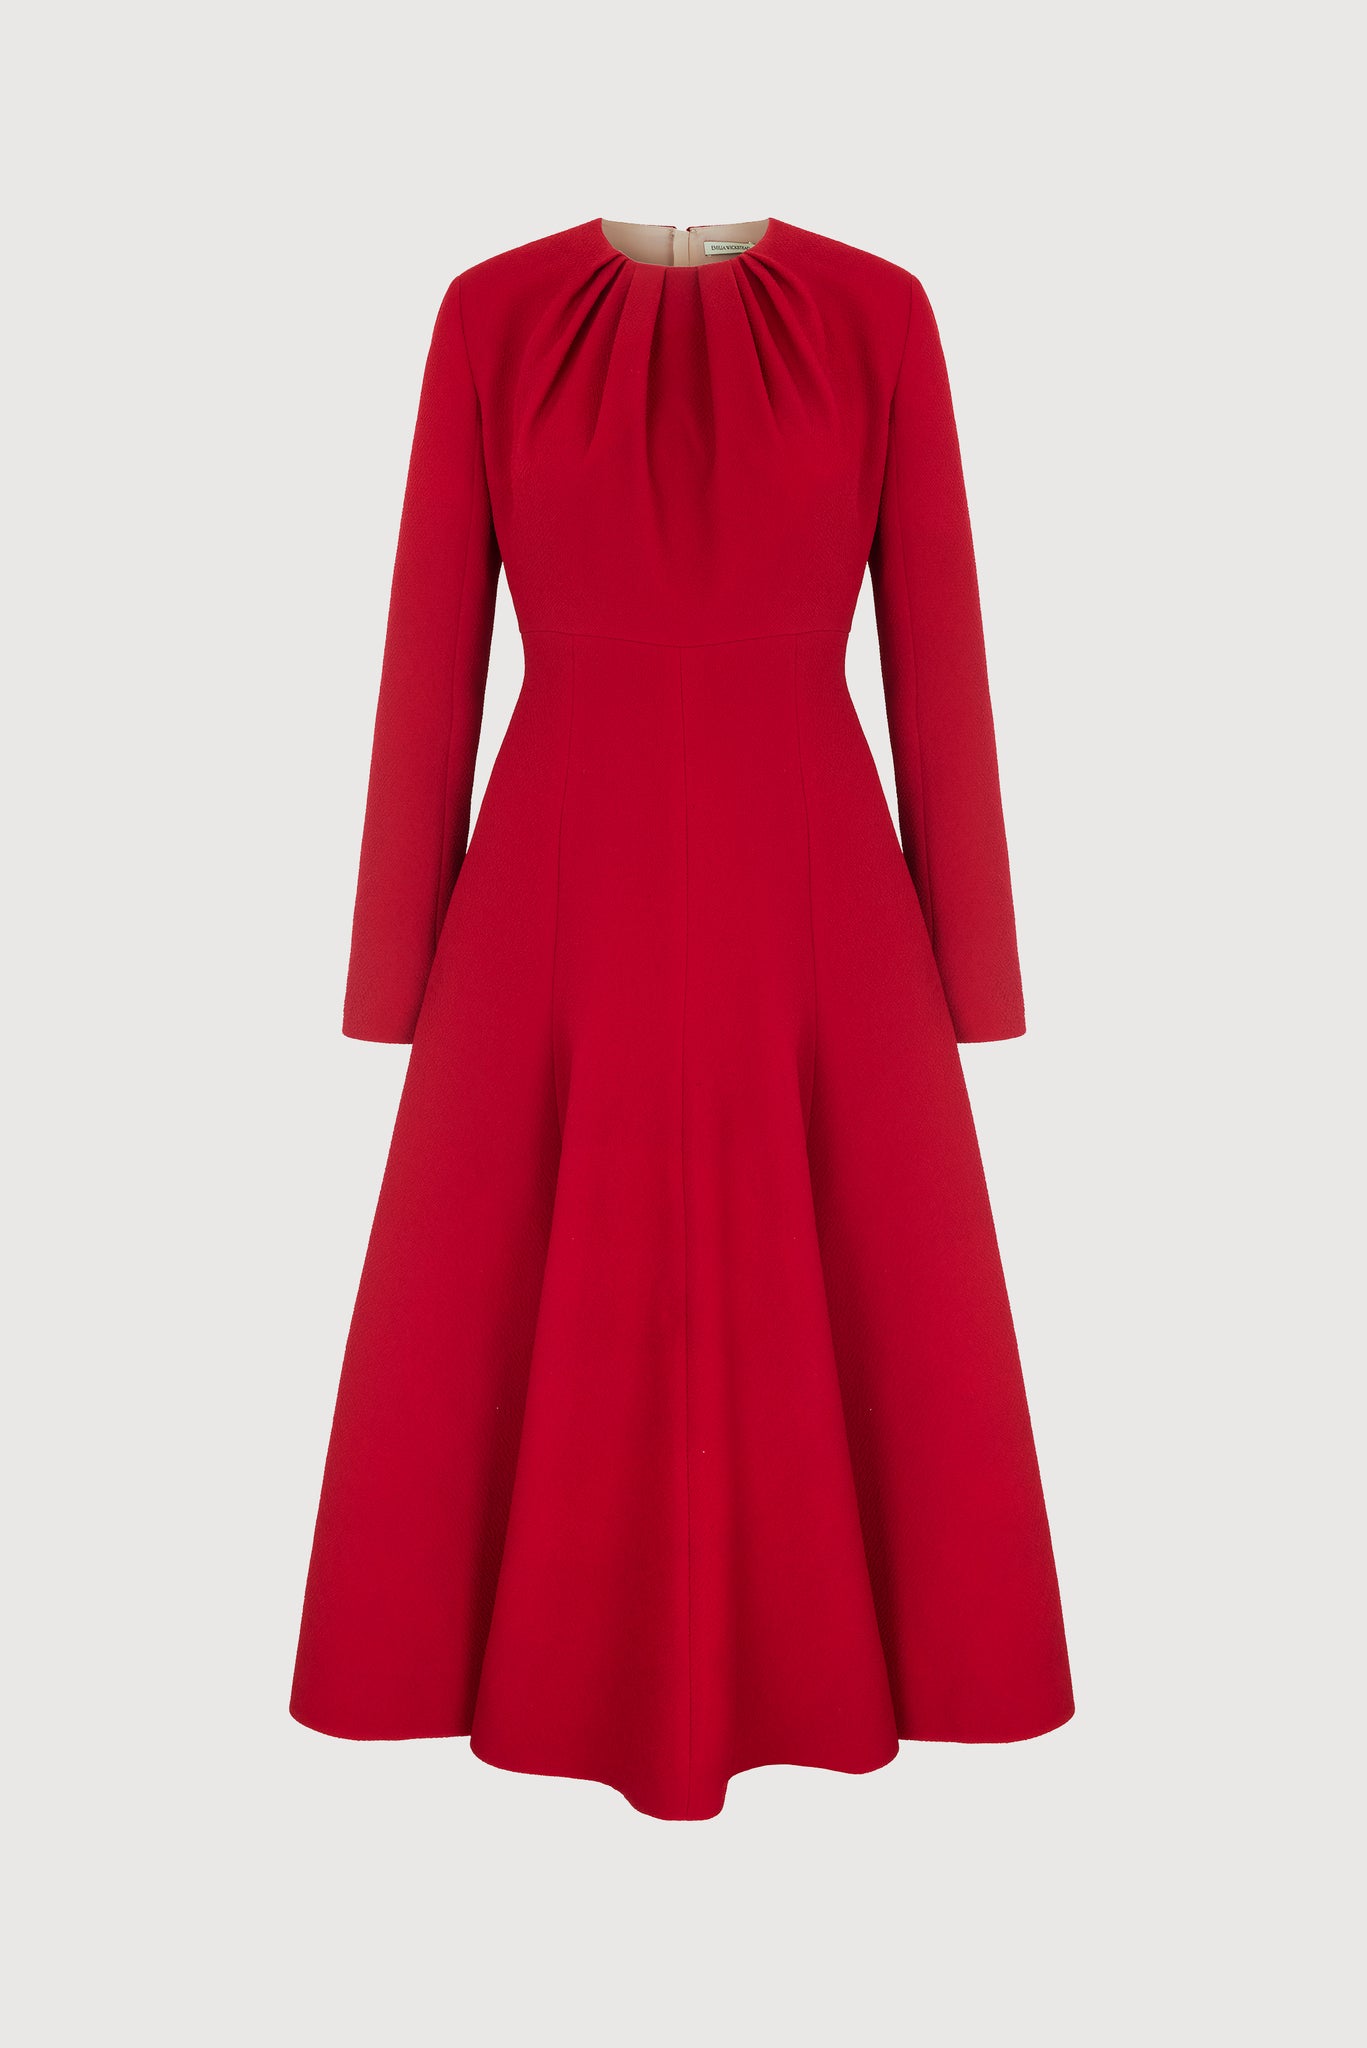 Belgium Dress in Red Double Crepe